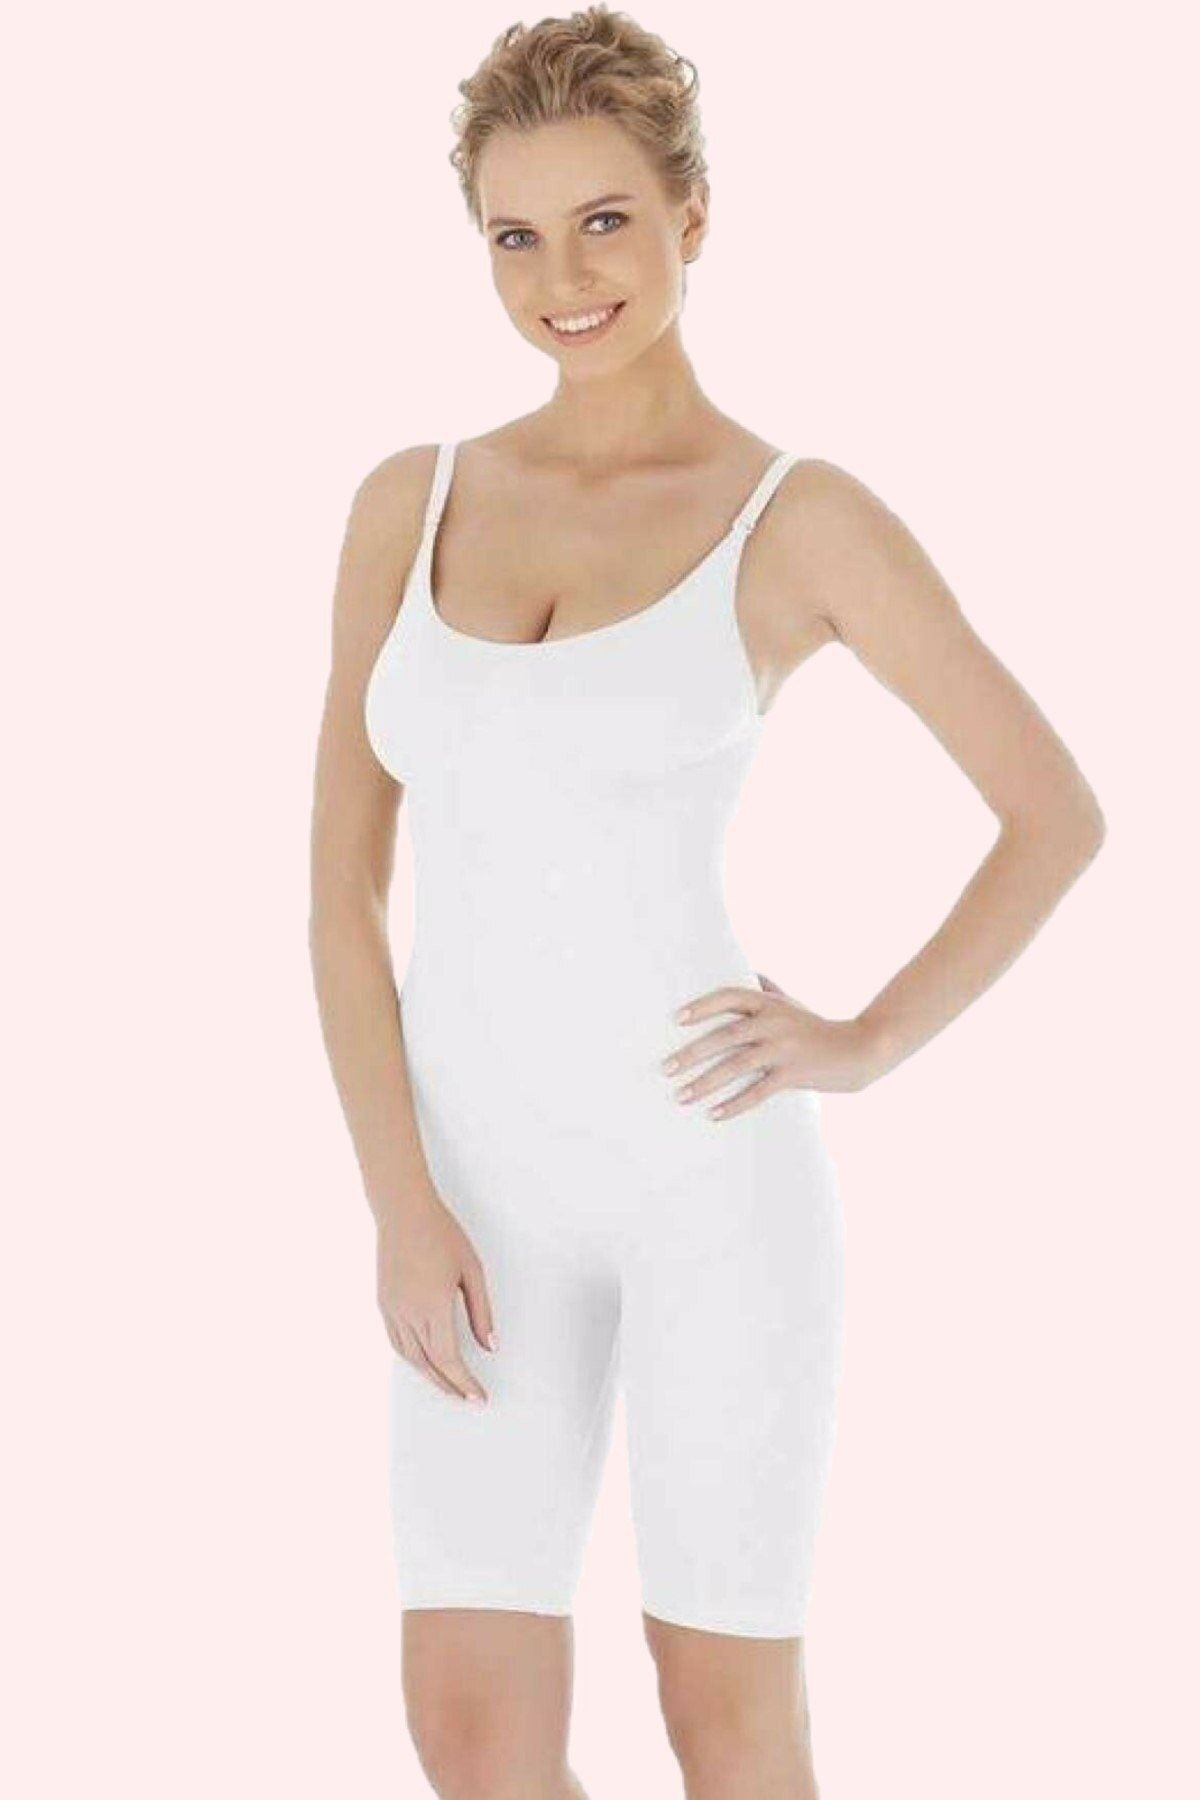 Marketimgel Larix Model Kadın Tam Boy Tulum Korse Push Up Etkili Basen Toplayıcı Tam Boy Korse Beyaz Renk